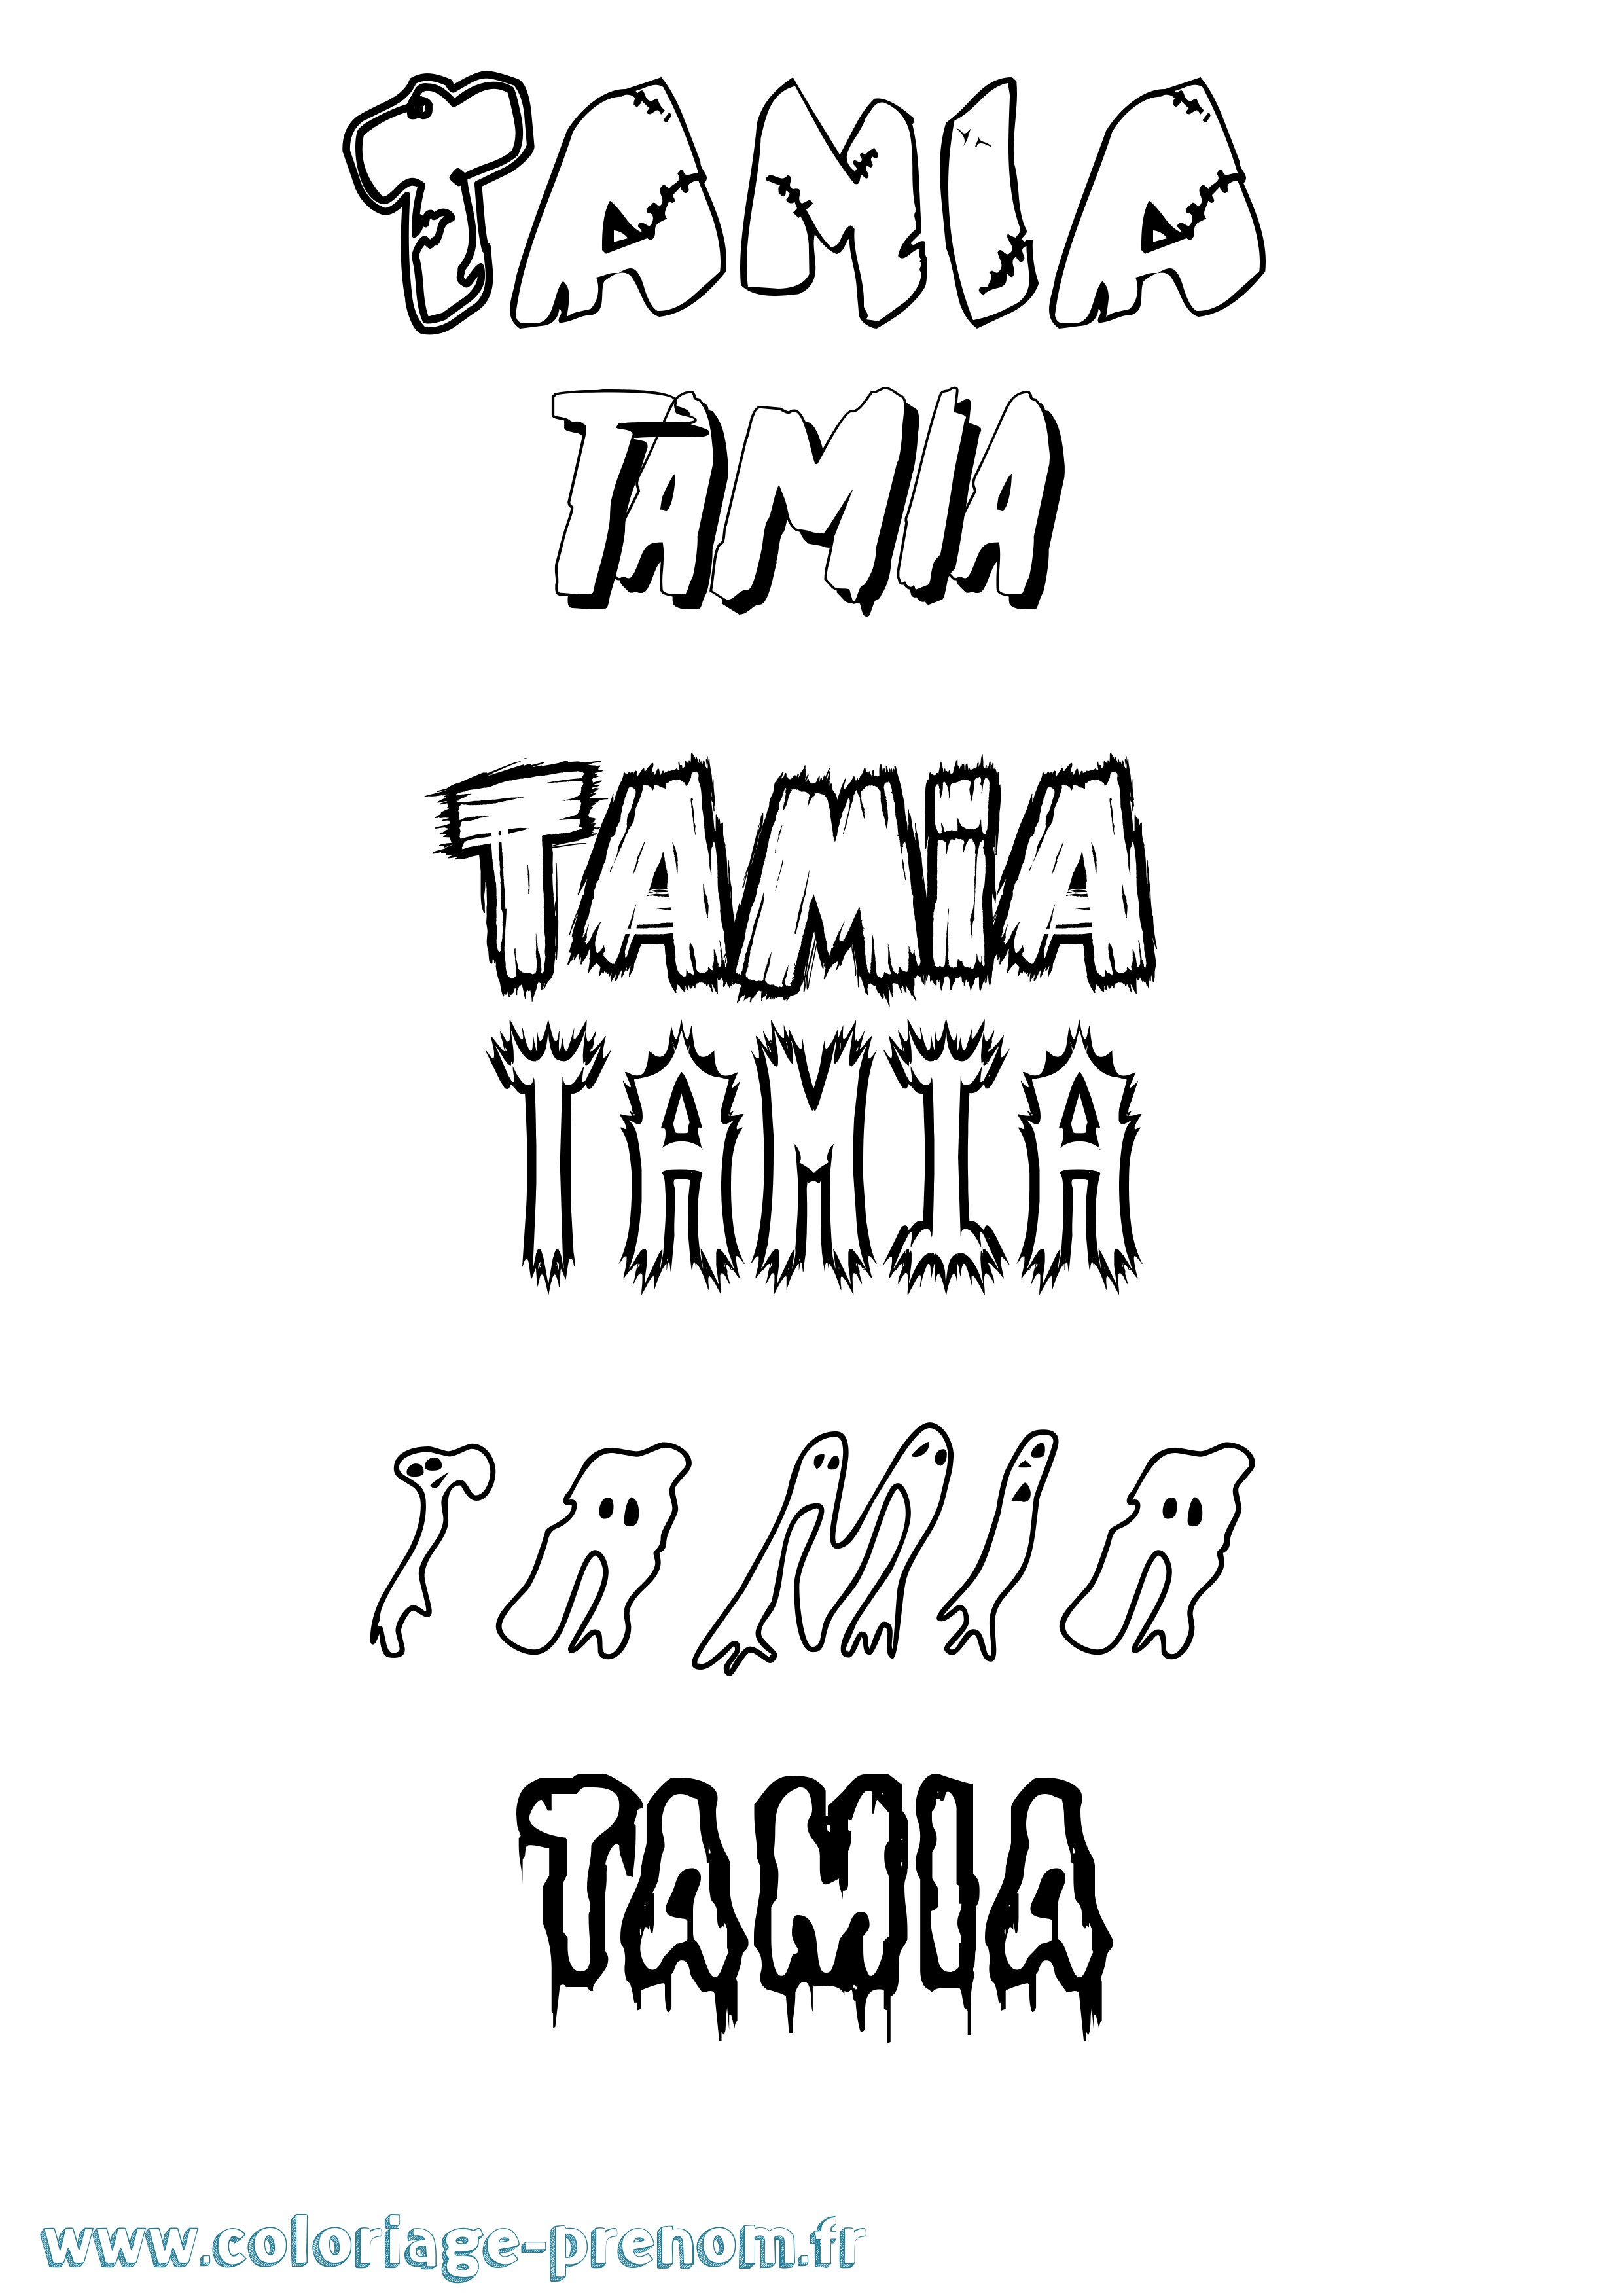 Coloriage prénom Tamia Frisson